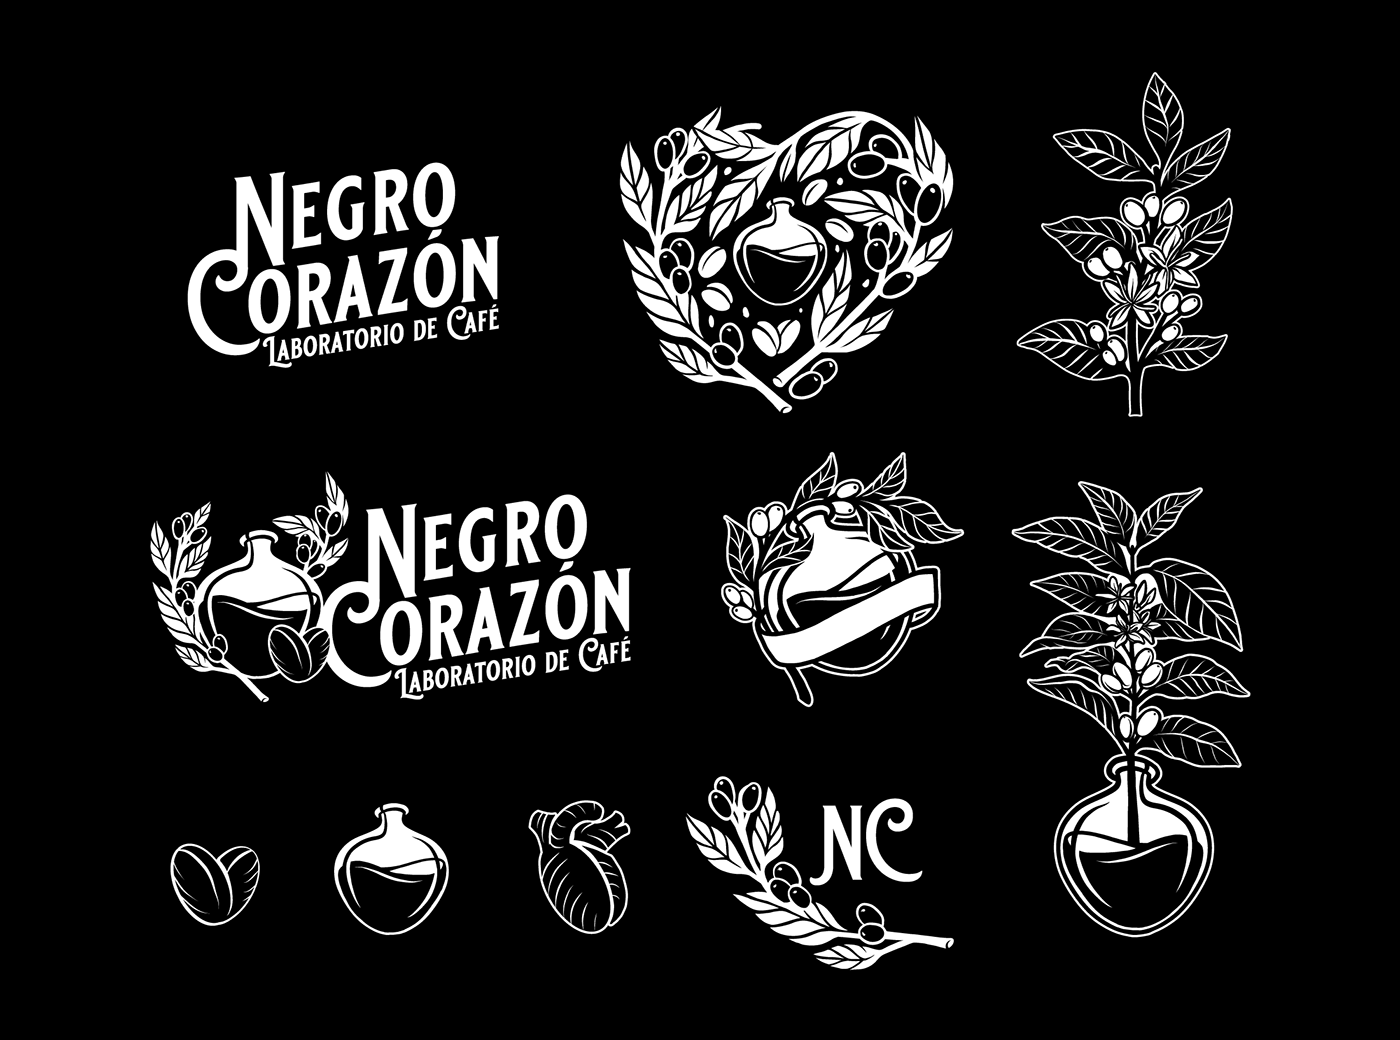 Coffee corazon black vector Label etiqueta mexico